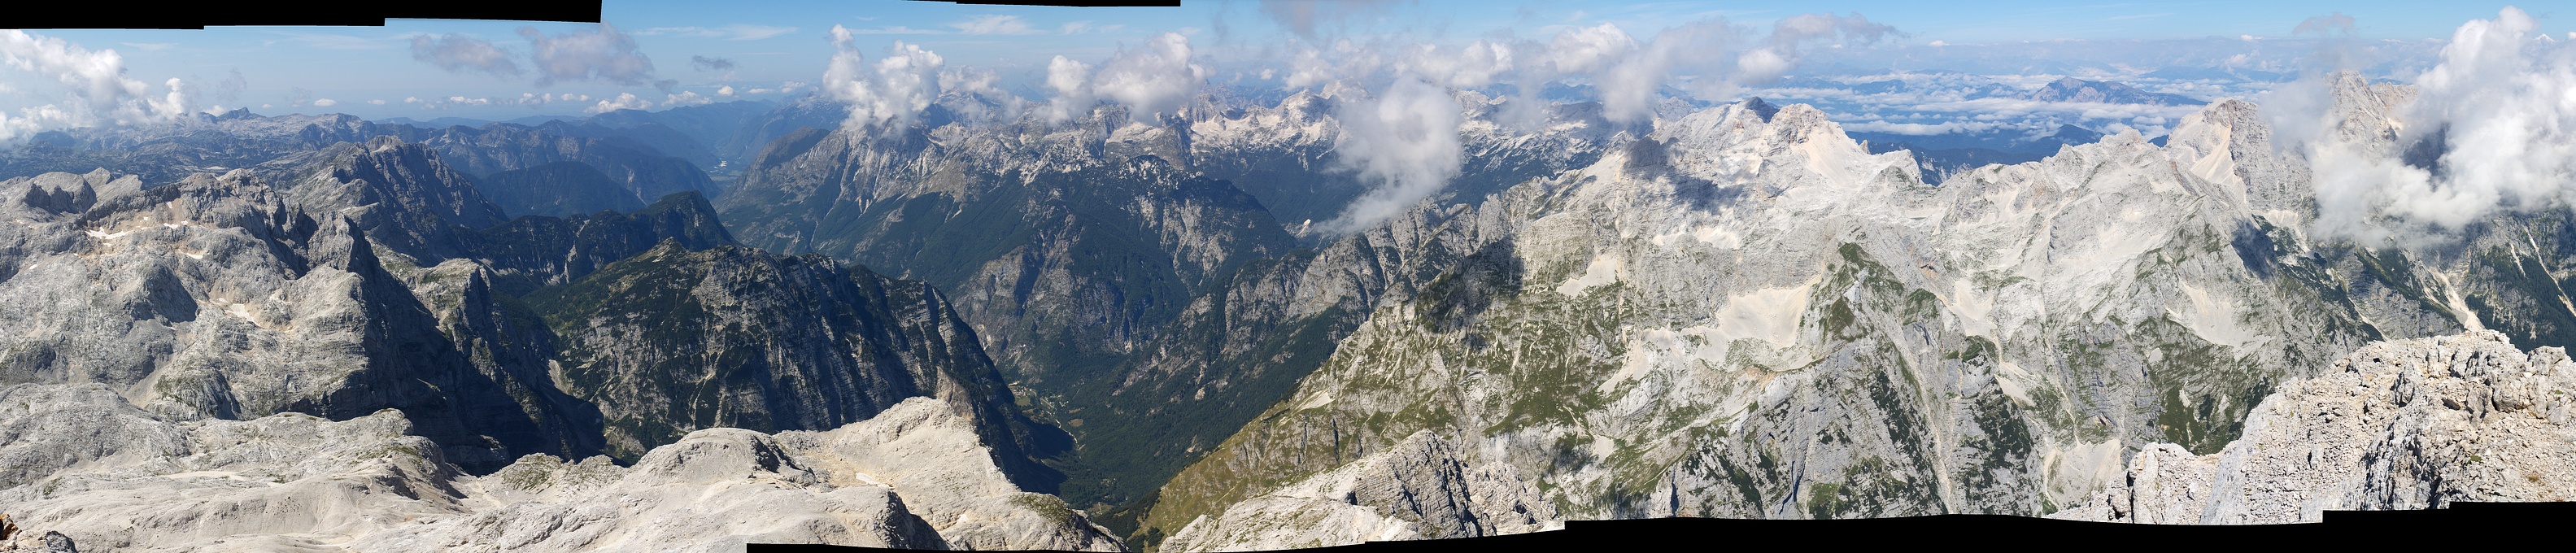 triglav-panorama.jpg - Panoramatický výhled z vrcholu Triglavu (2 864 m)